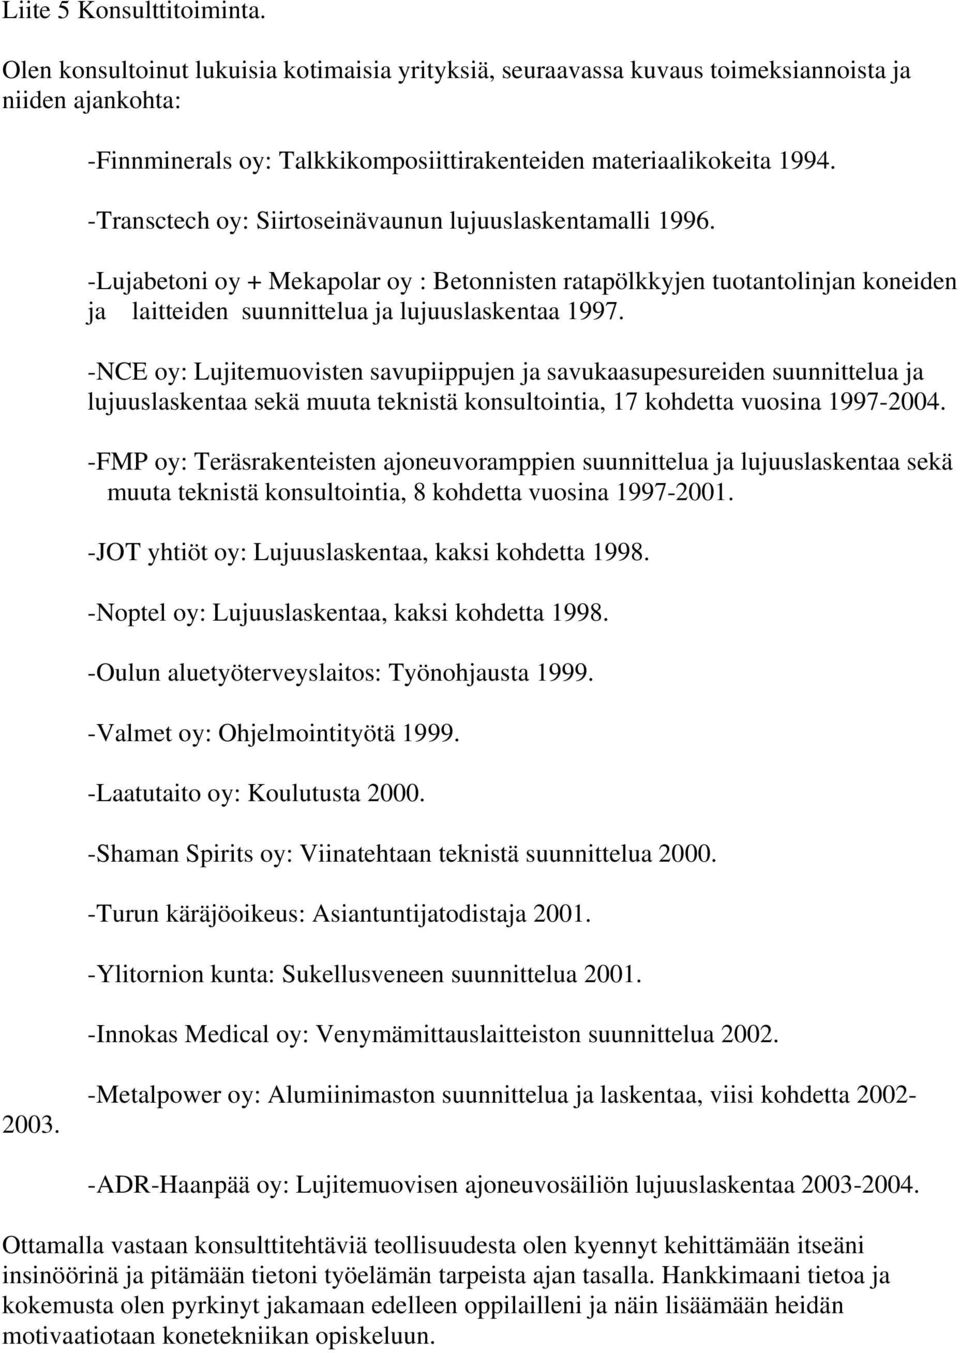 -Transctech oy: Siirtoseinävaunun lujuuslaskentamalli 1996. -Lujabetoni oy + Mekapolar oy : Betonnisten ratapölkkyjen tuotantolinjan koneiden ja laitteiden suunnittelua ja lujuuslaskentaa 1997.